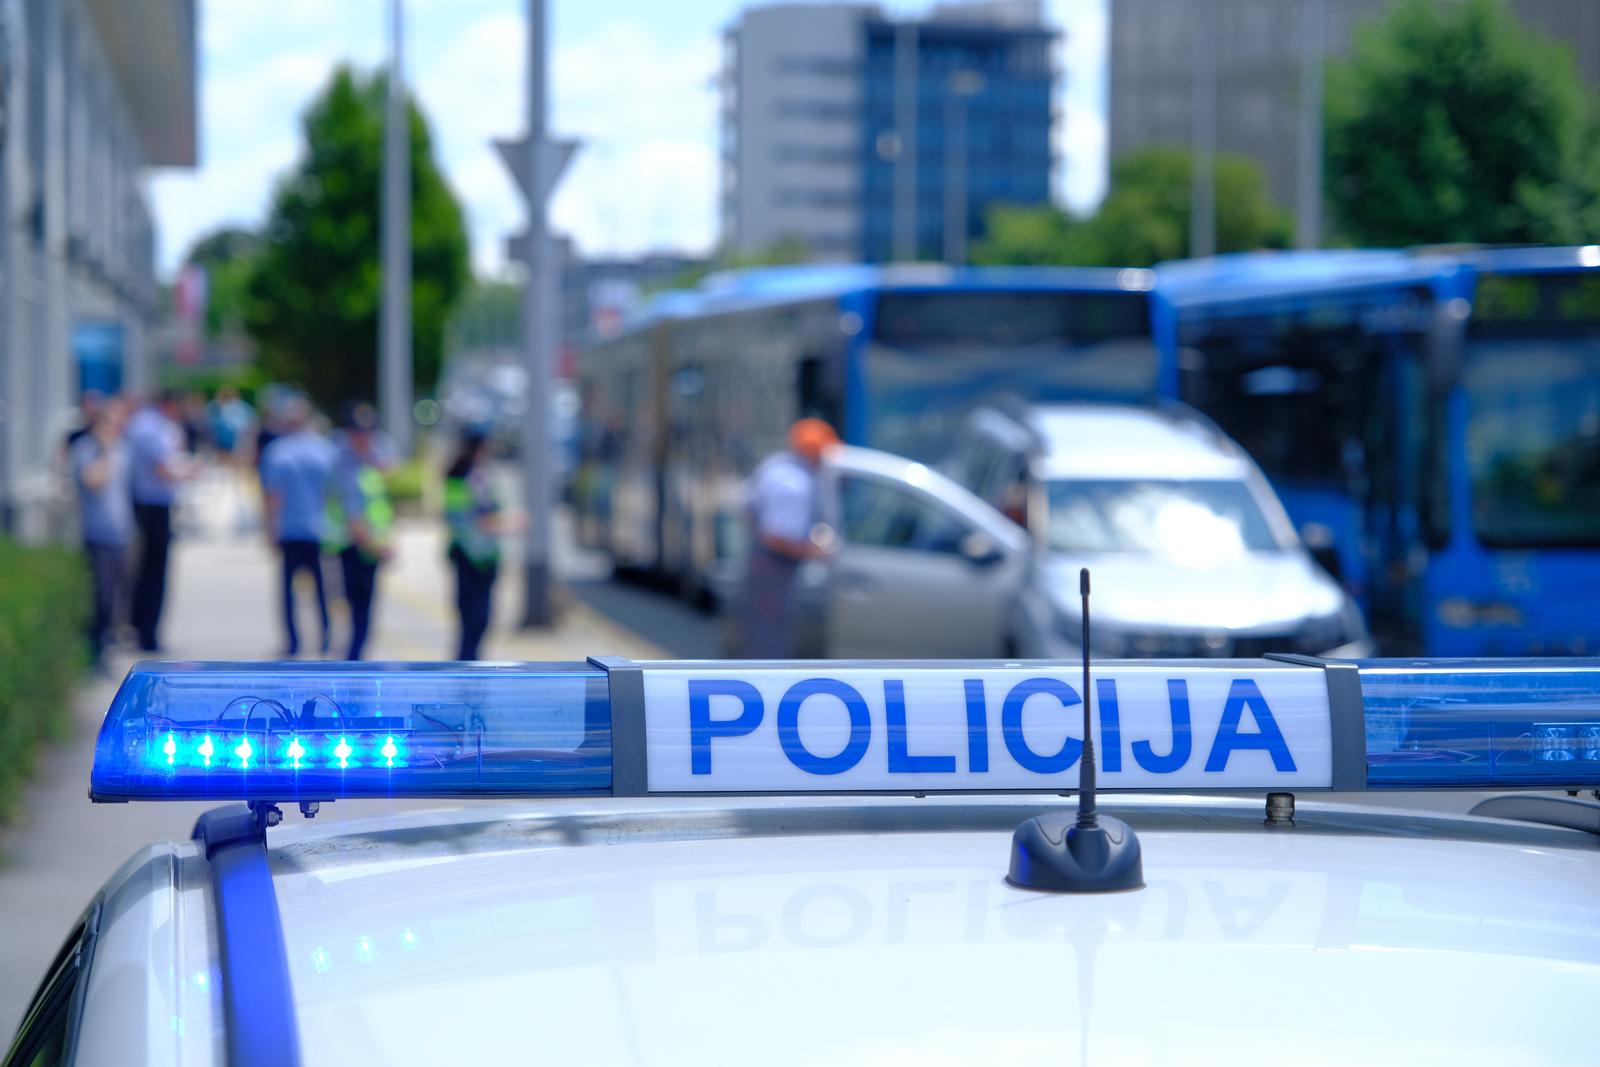 29.06.2023., Zagreb - Na krizanju Heinzleove i Ulice grada Vukovara dogodila se nesreca gdje je autobus pokupio nekoliko auta. Photo: Slaven Branislav Babic/PIXSELL